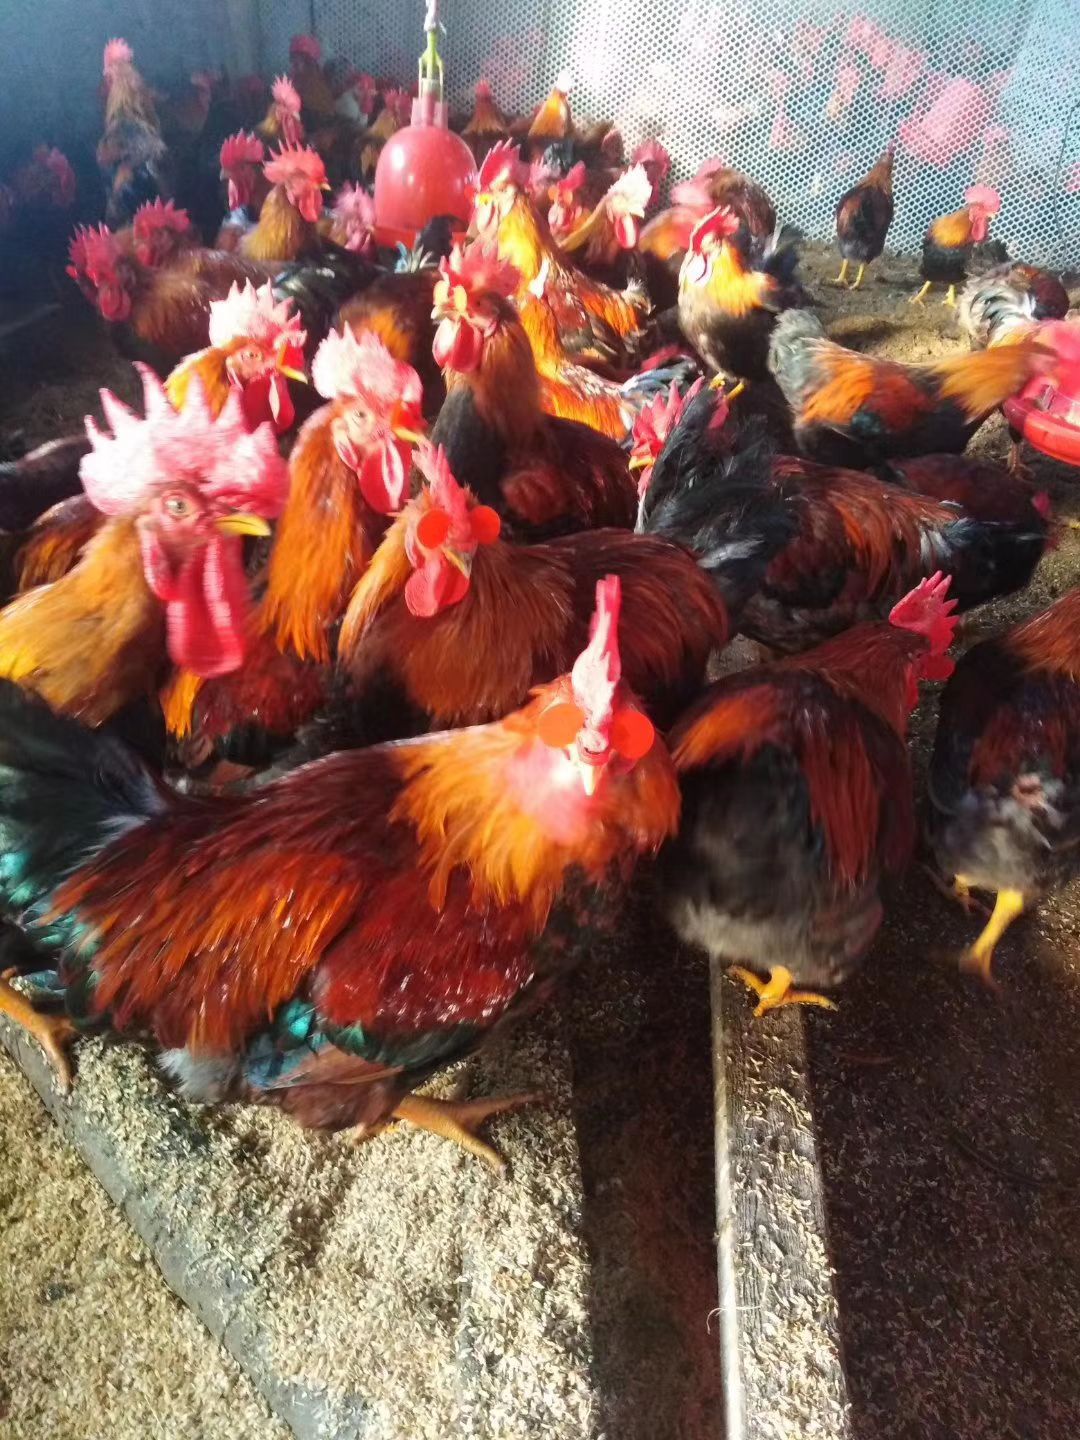 [土鸡批发]草原红公鸡 养了5个月毛好,价格低有意向的老板联系价格10